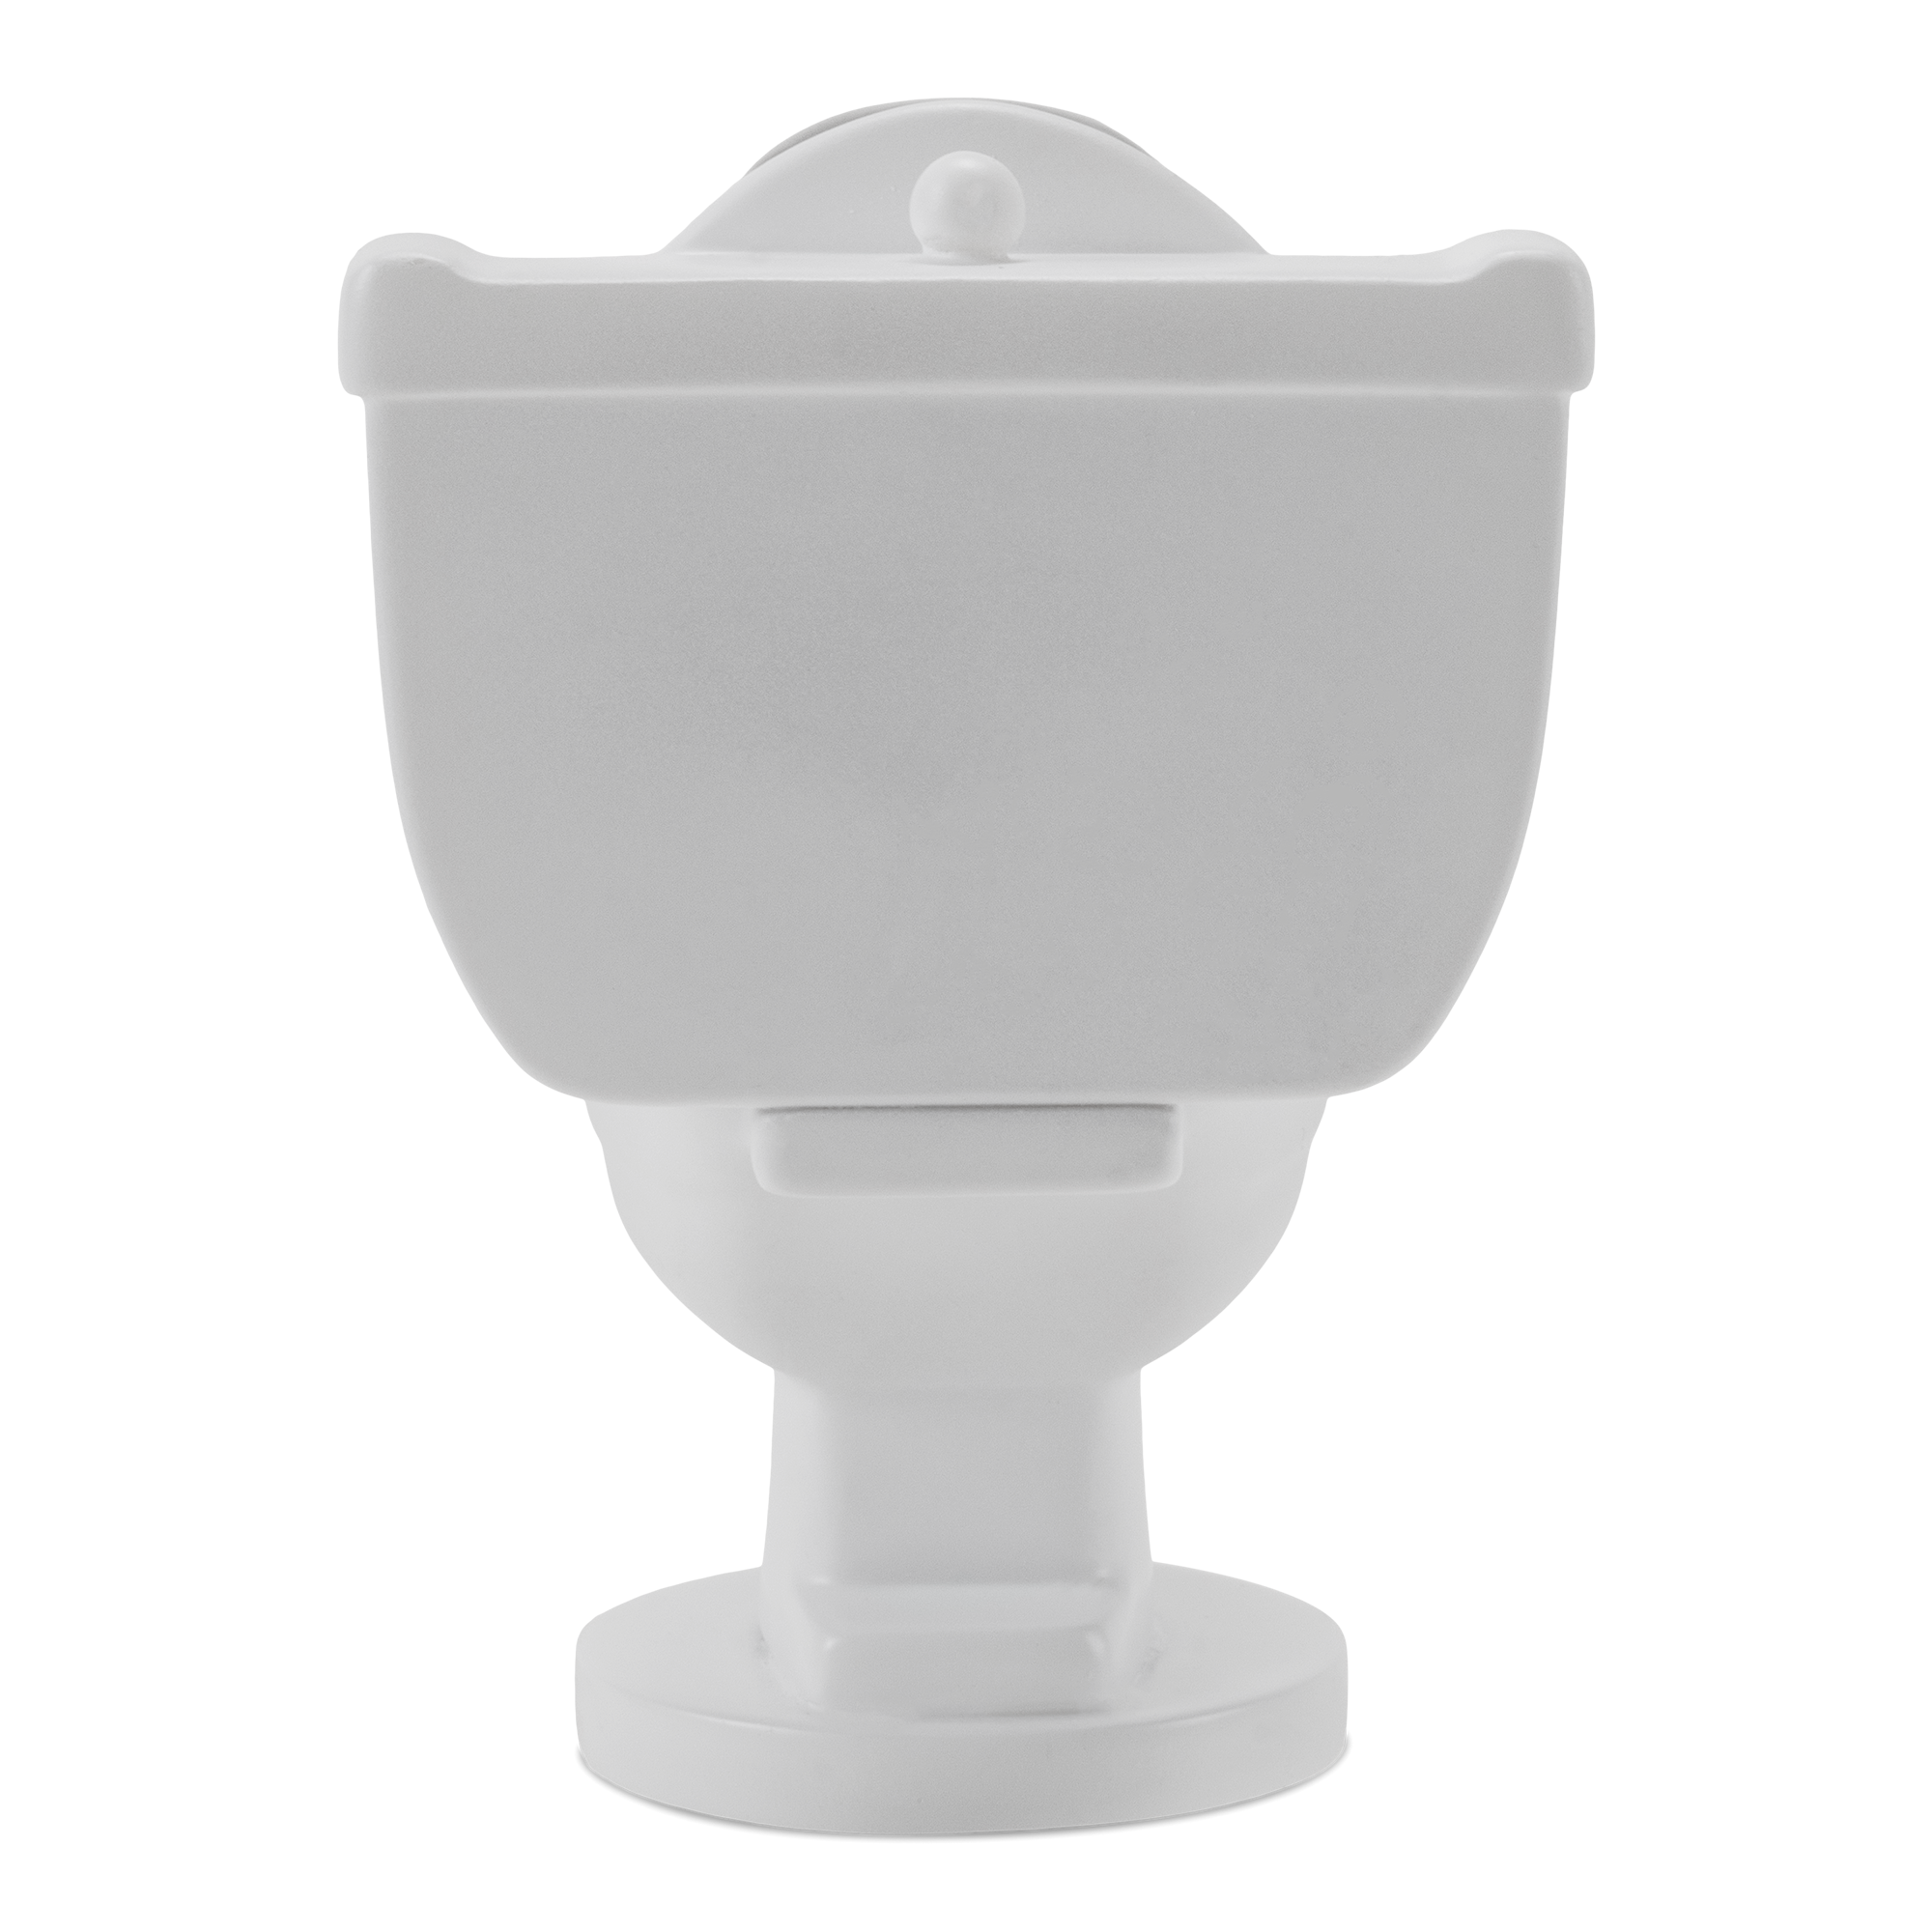 Skibidi Skidibi Toilet G-man G-toilet 3.0 Figura Muñeco 3d